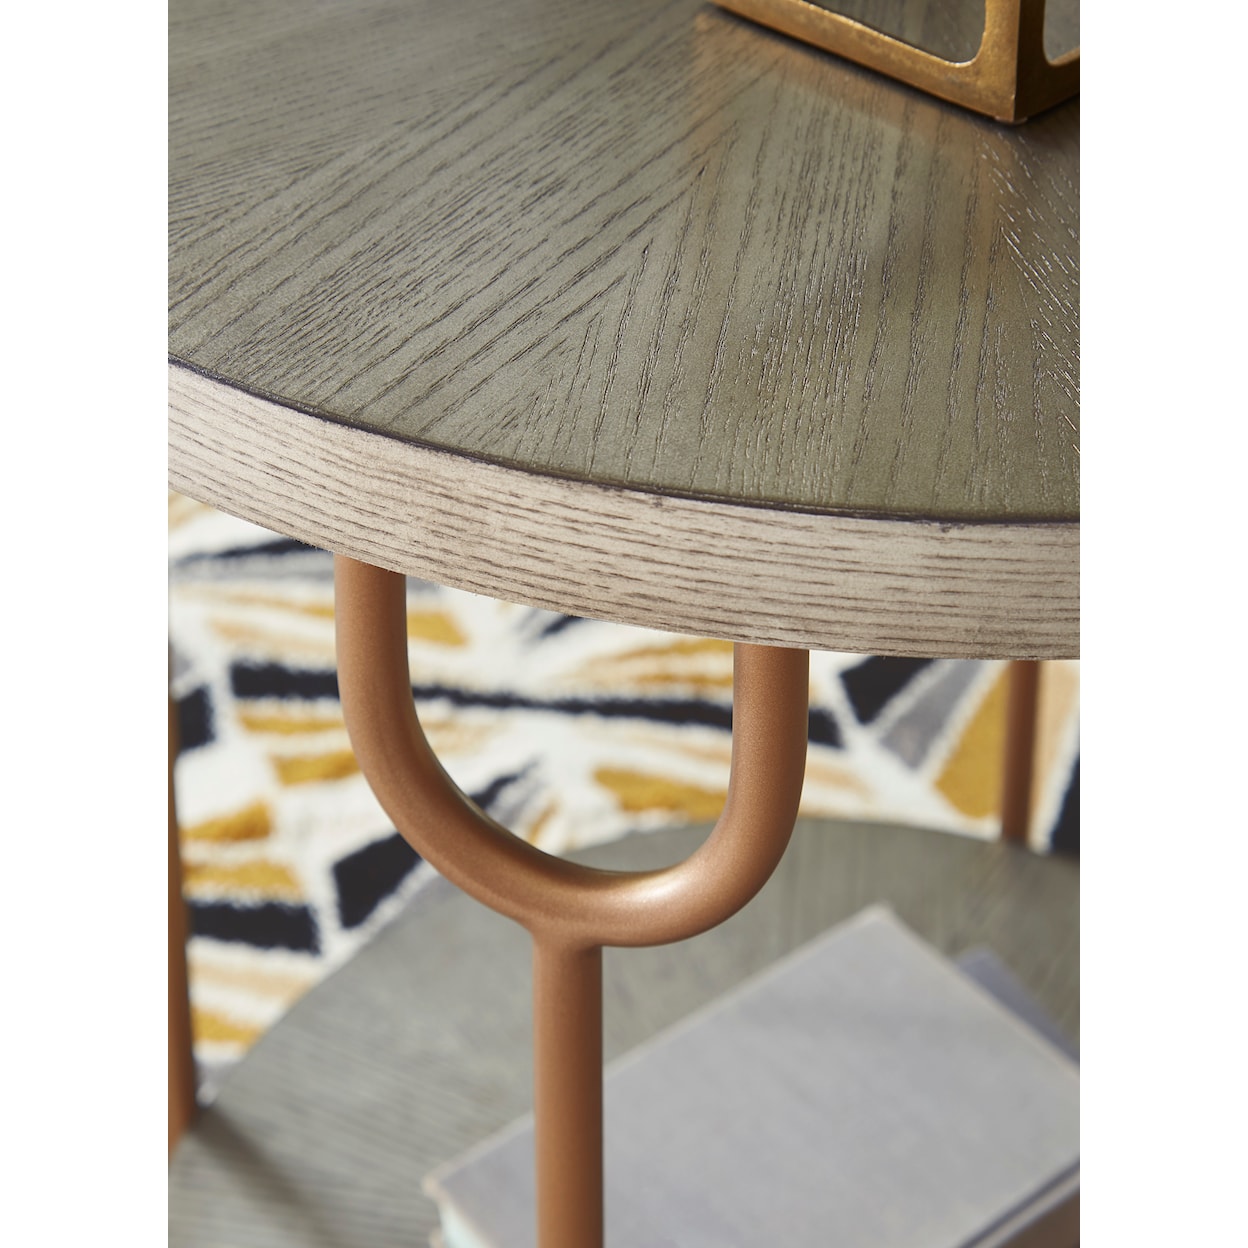 Ashley Furniture Signature Design Ranoka End Table